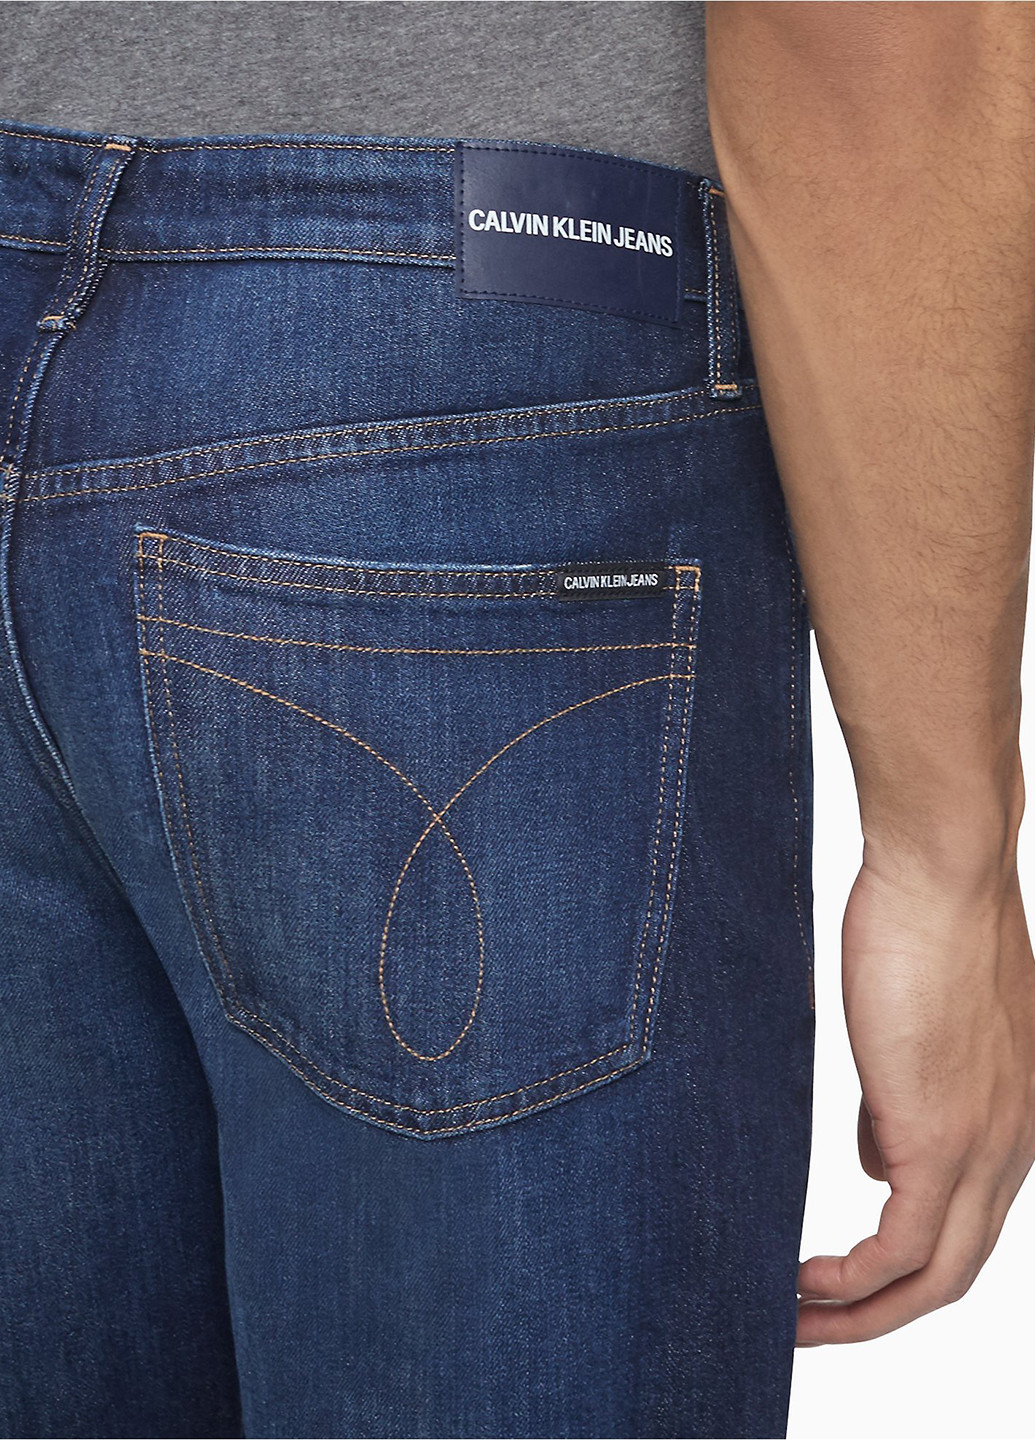 Шорты Calvin Klein однотонные синие джинсовые хлопок